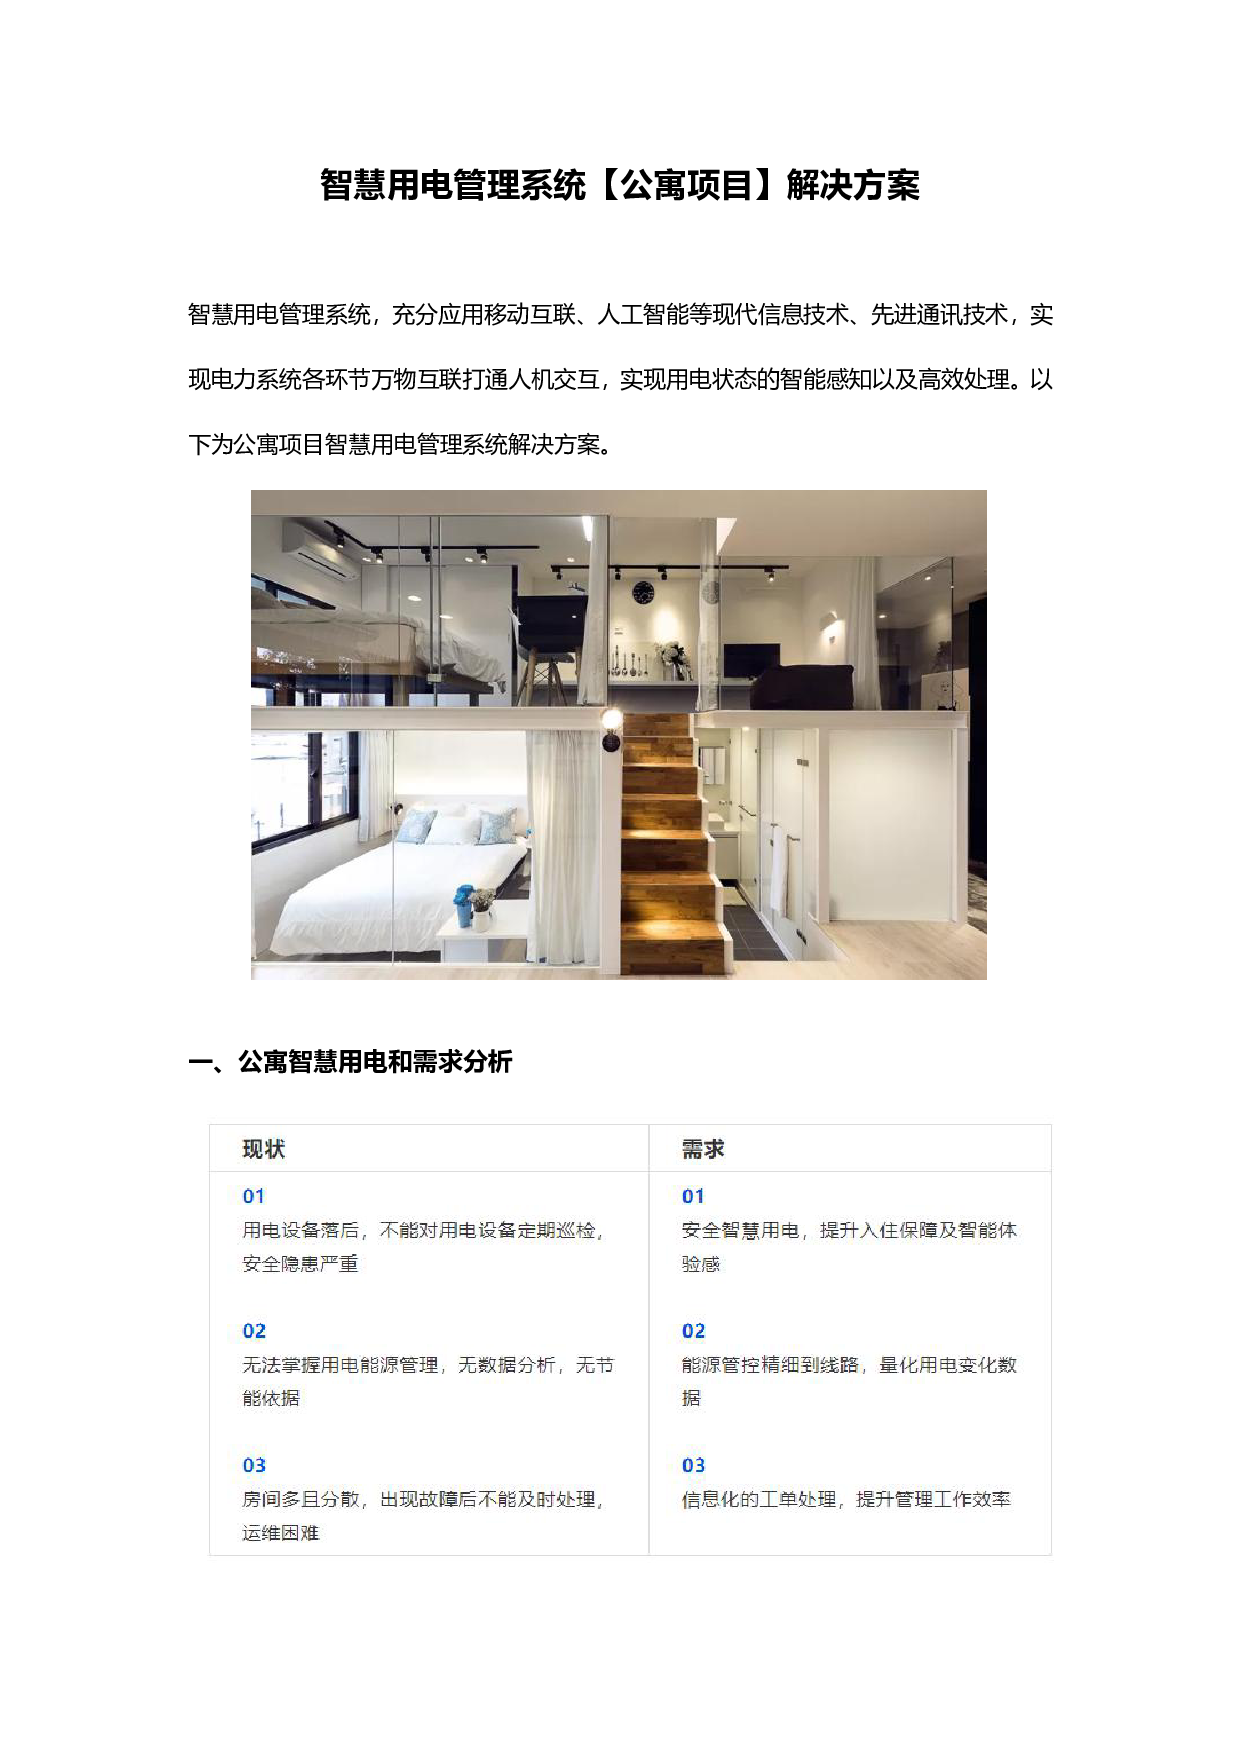 微羽智慧用电管理系统【公寓项目】解决方案图片